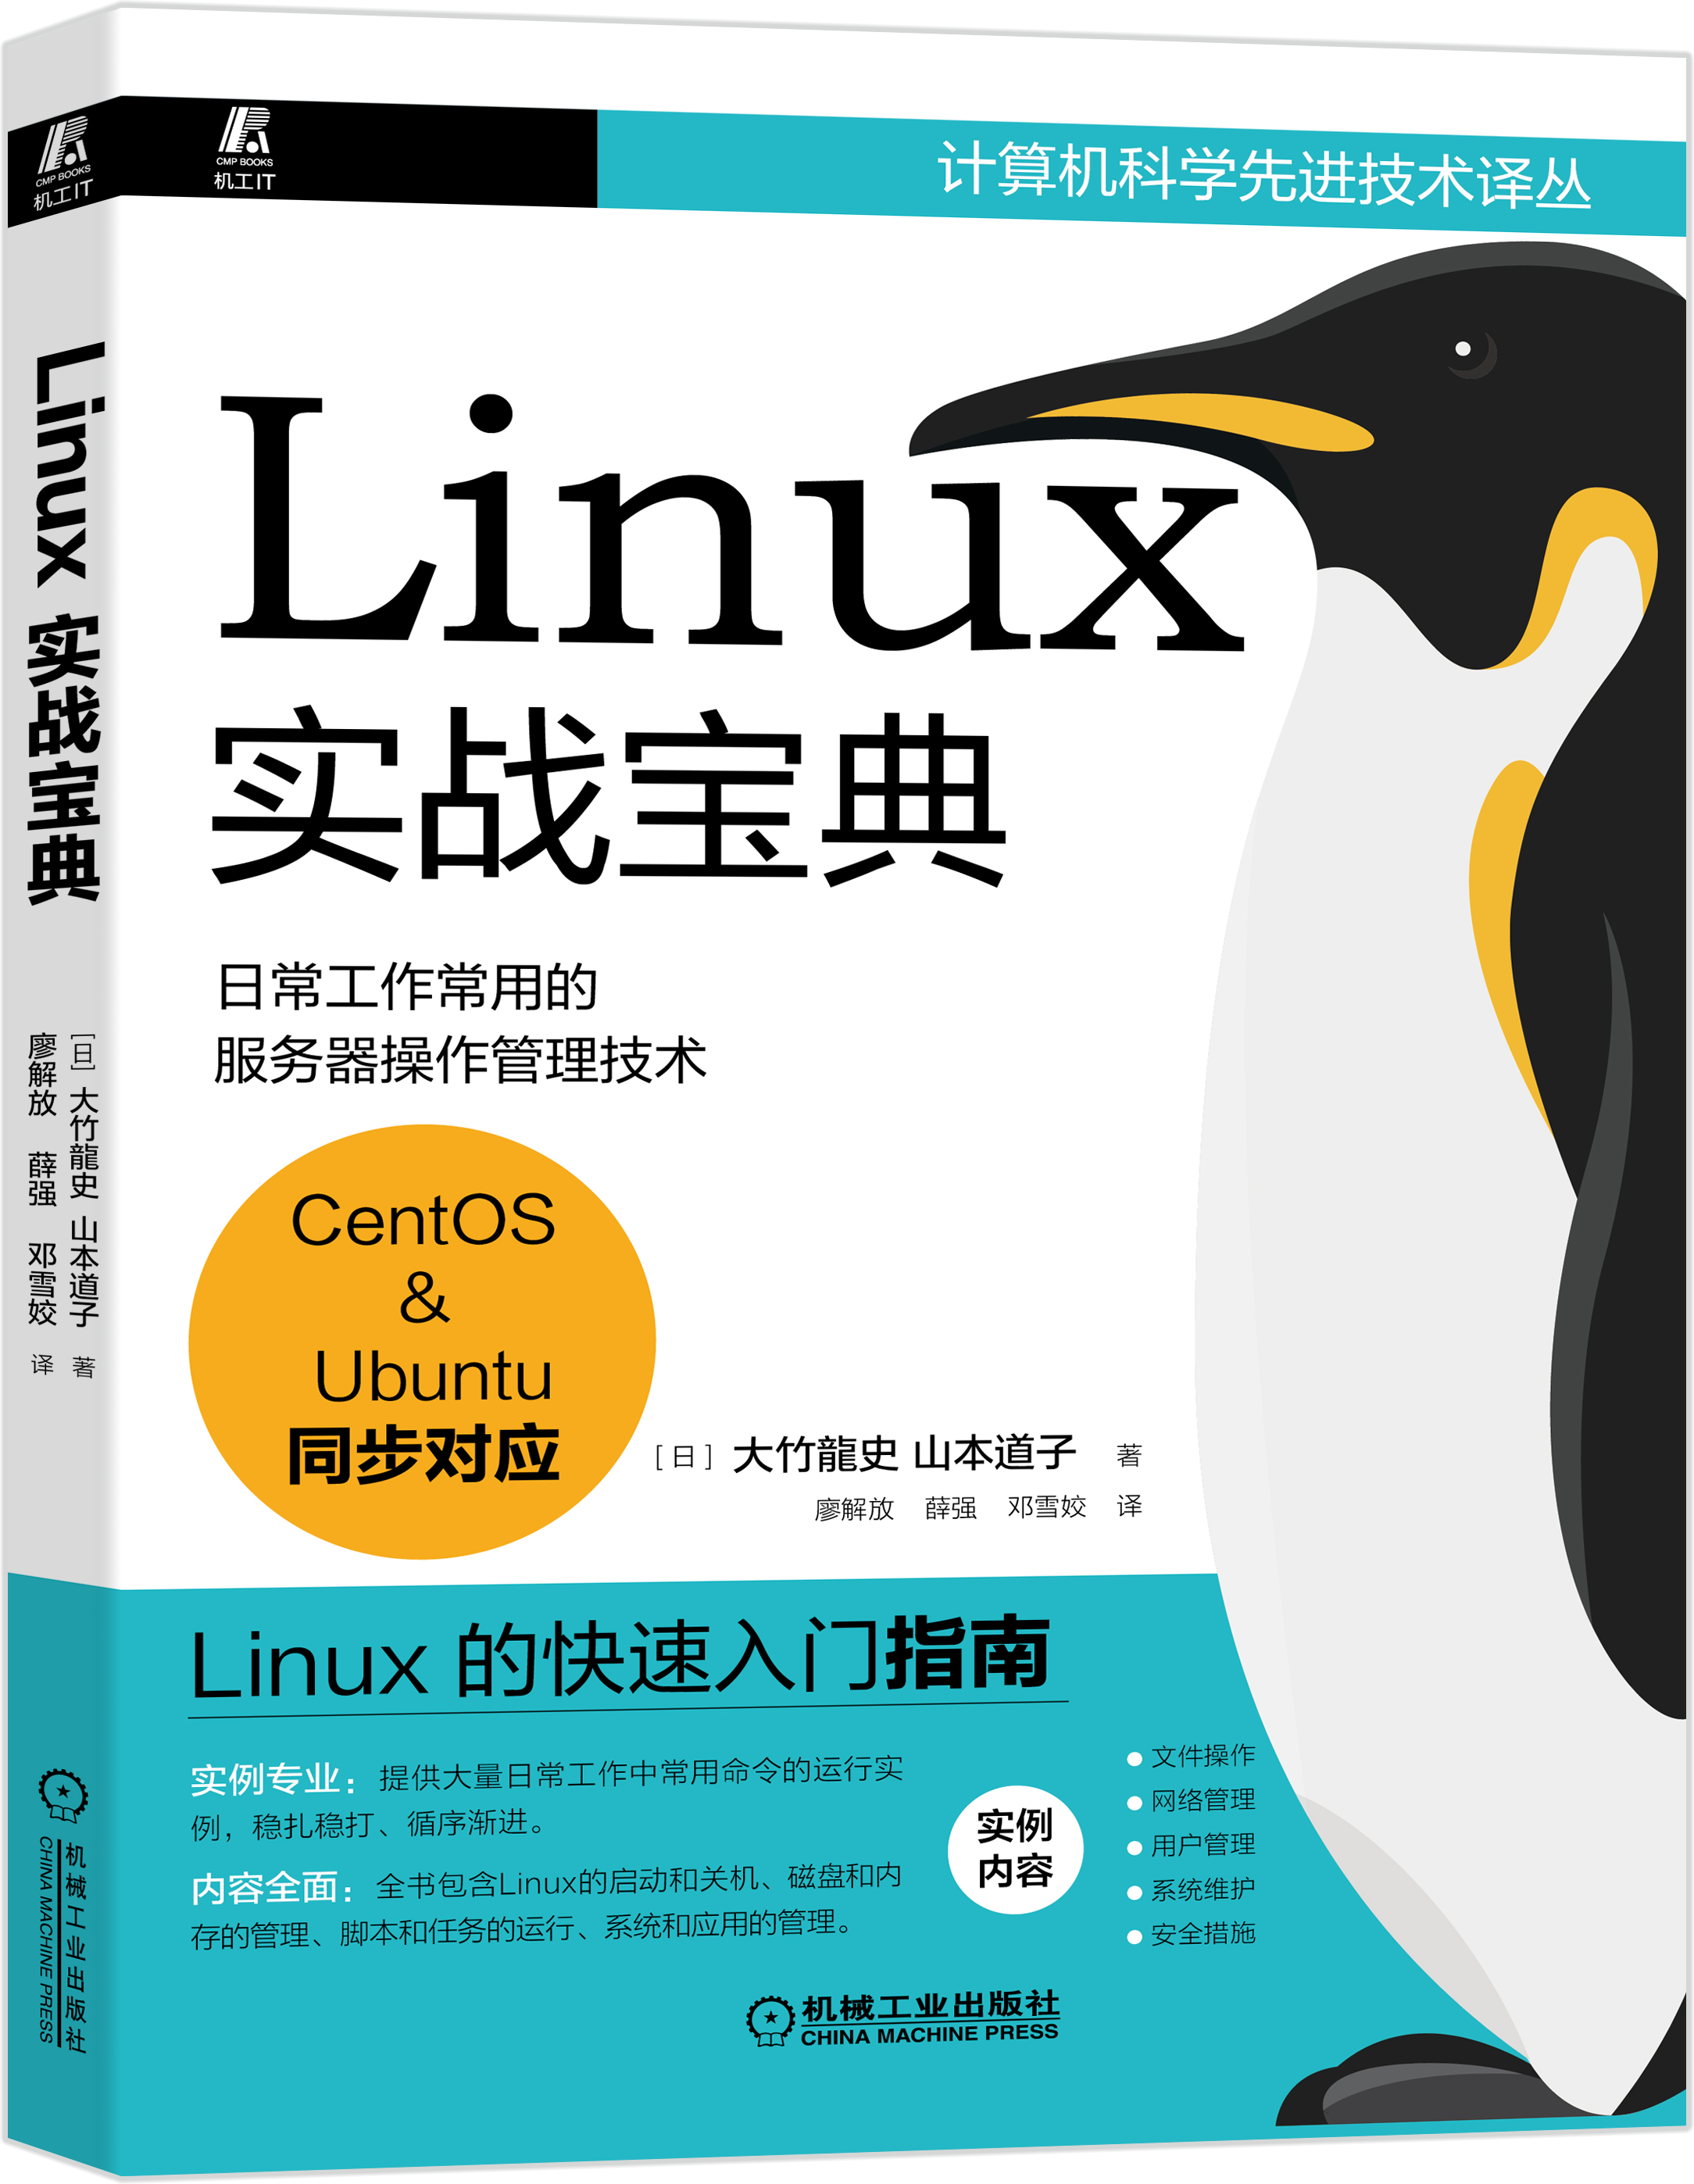 零基础学习 Linux 该如何入门？_LuciferLiu_DBA